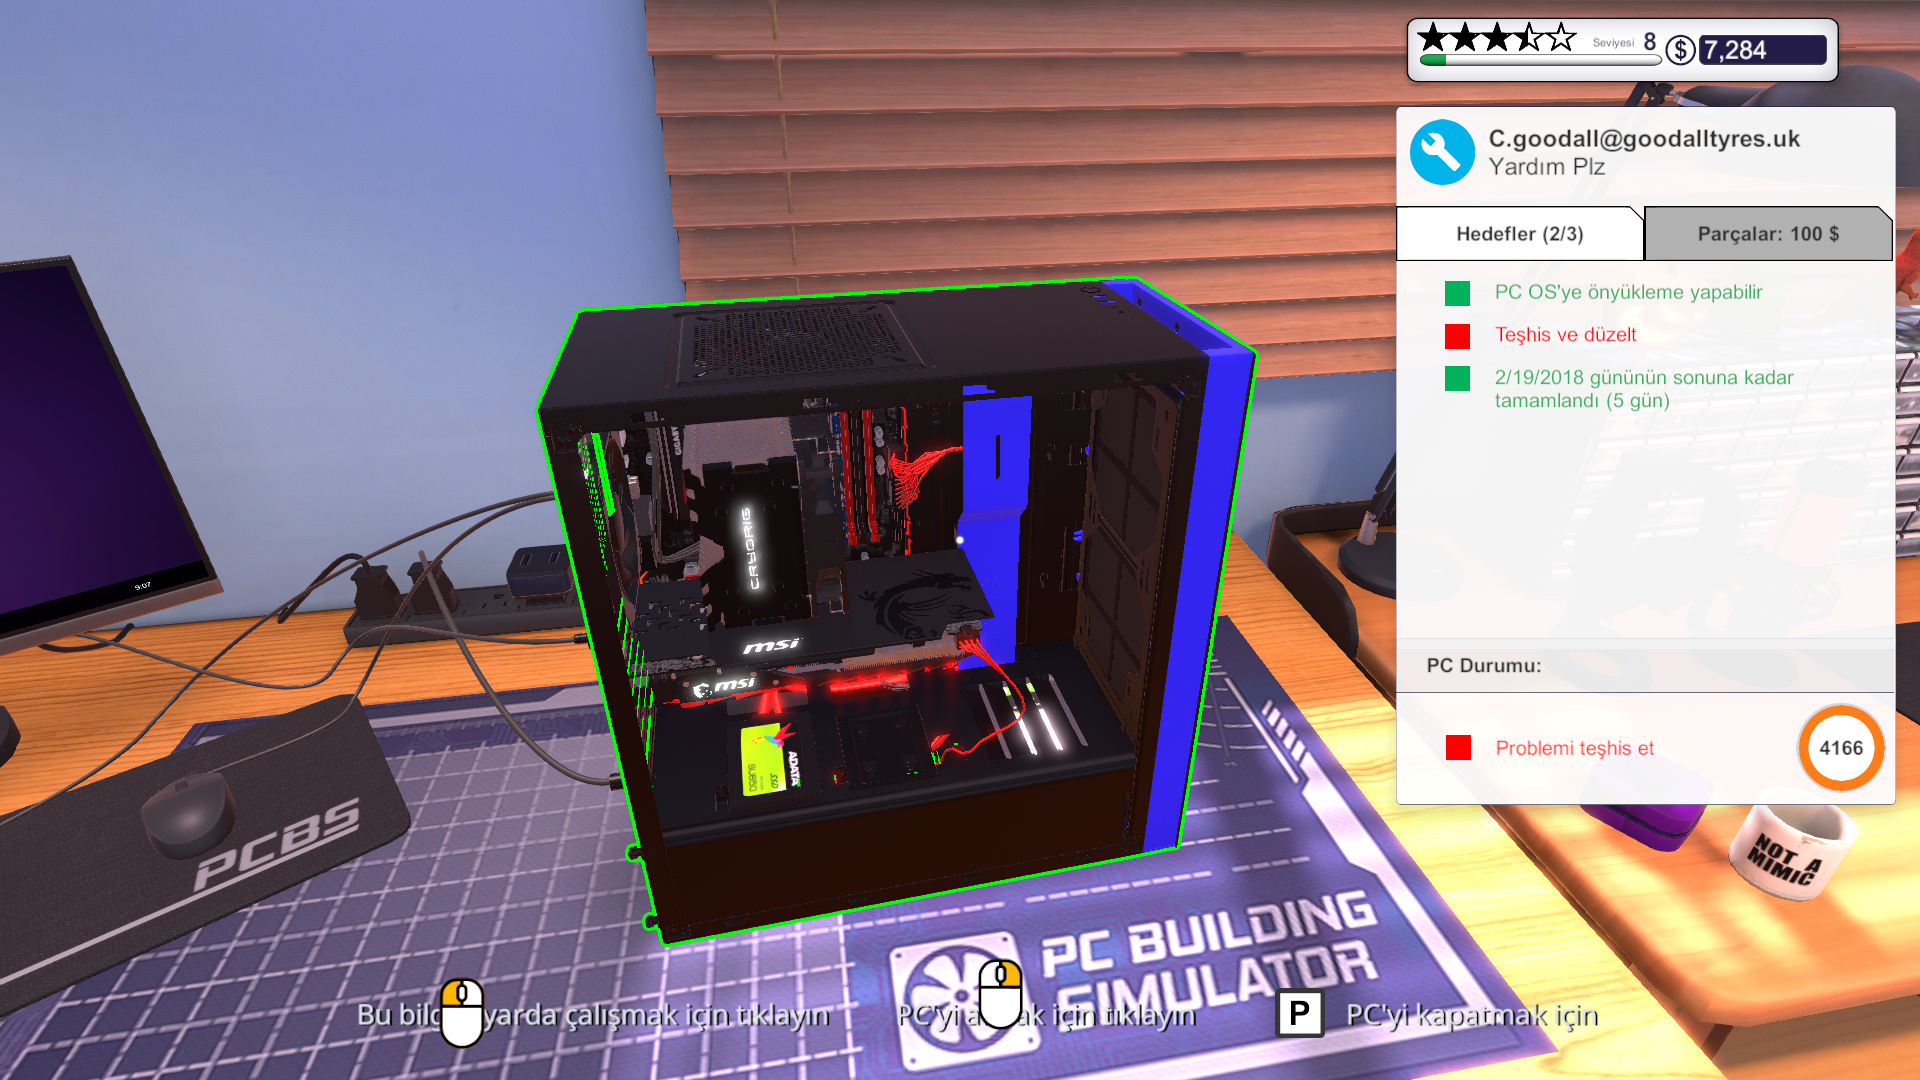 PC Building Simulator'da Teşhis ve Düzelt Kırmızı Yanıyor | Technopat Sosyal